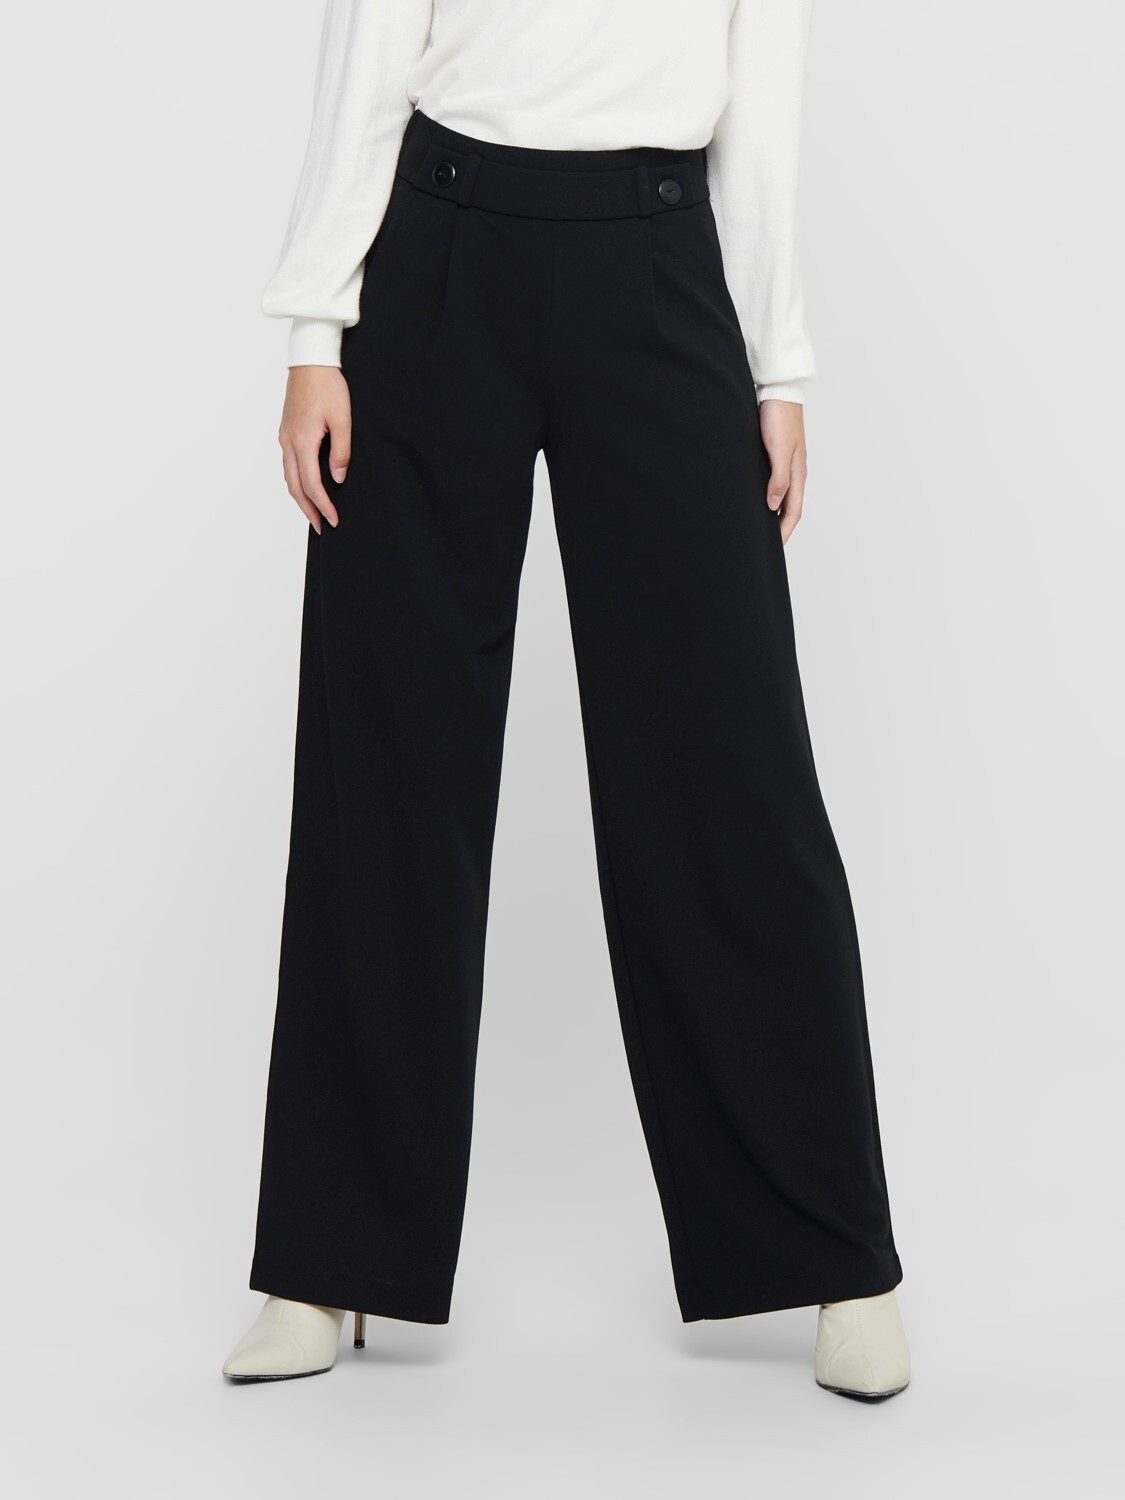 Wijde lange broek – GEGGO – zwart //Dé broek :-) – lou. – dé webshop voor  betaalbare dameskleding en accessoires